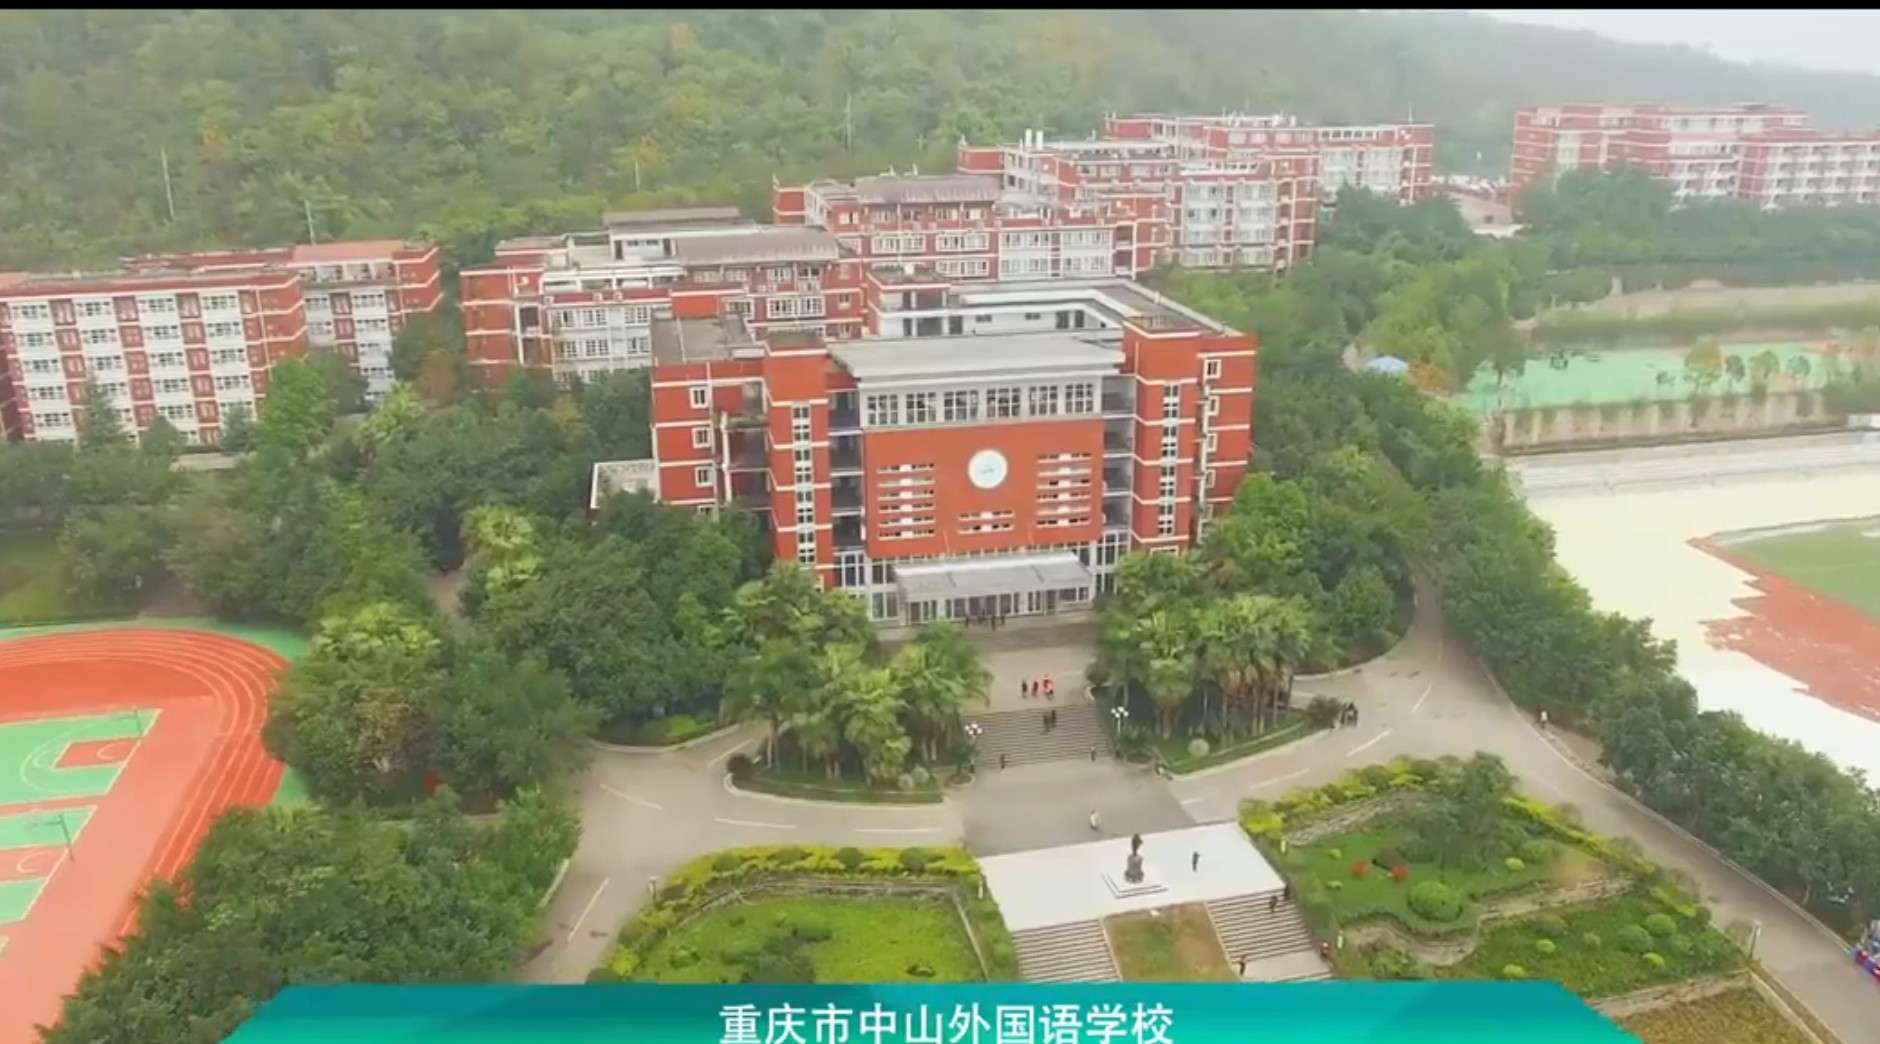 上海新纪元教育集团企业宣传片